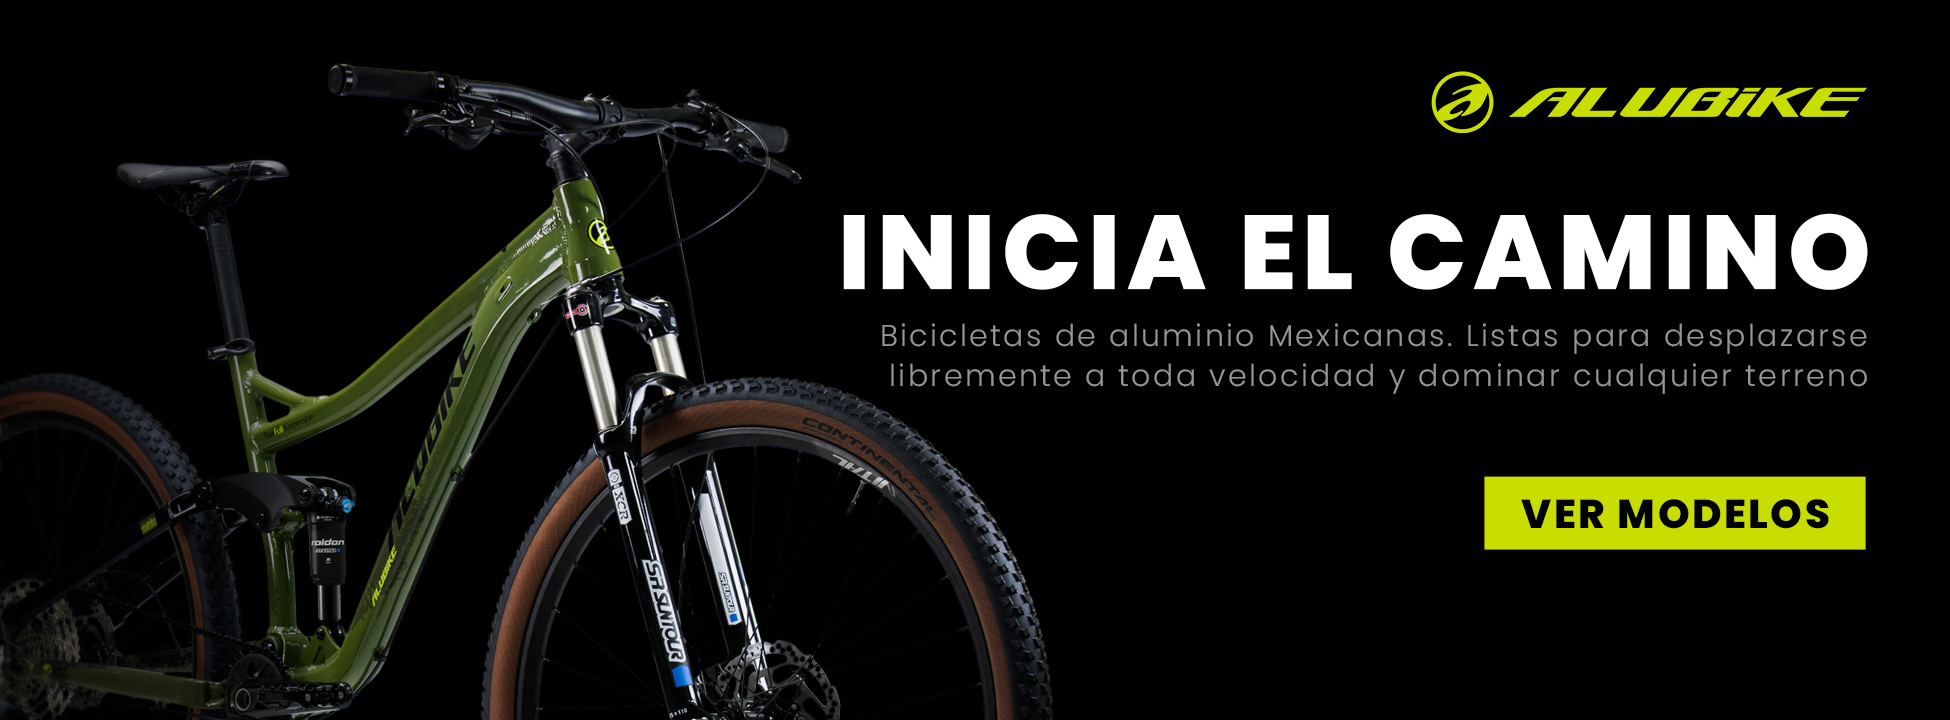 Tienda online #1 en México de accesorios para bicicleta - WeRbikes Tienda  de Bicicletas